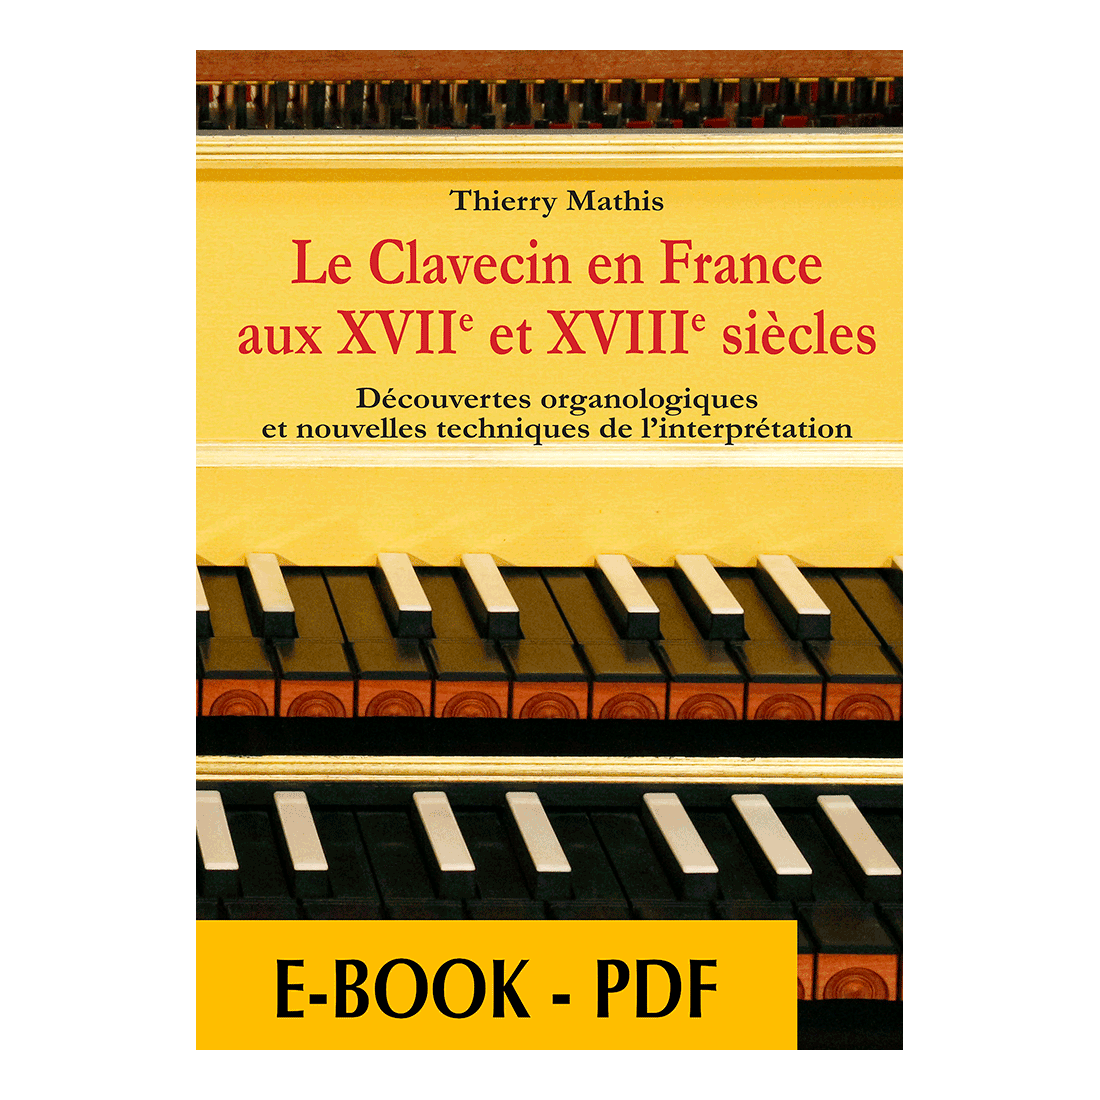 Le clavecin en France aux 17e et 18e siècles - E-book PDF